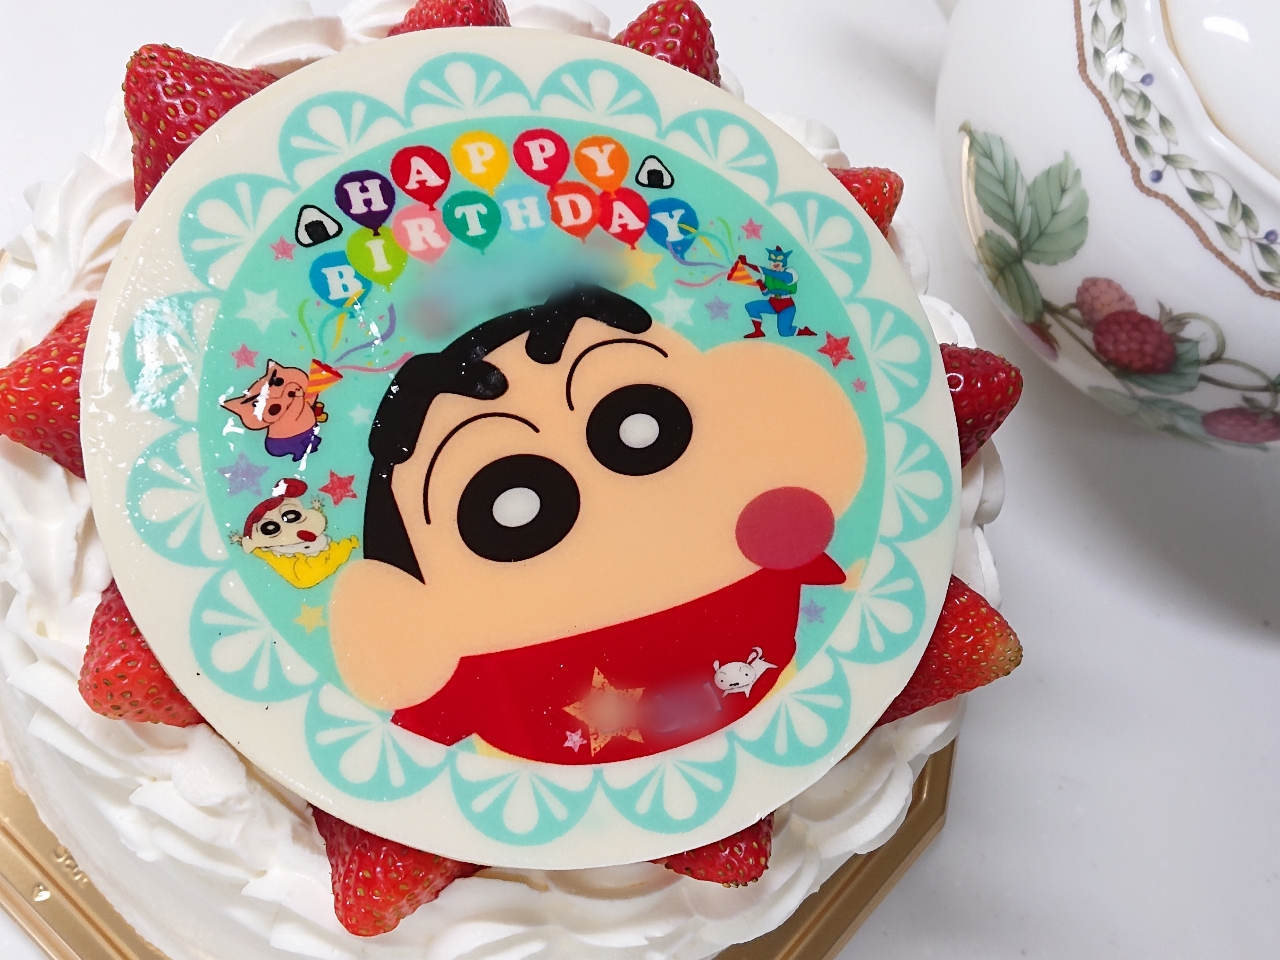 大田区 お誕生日や特別な日に 写真や好きなキャラクターをデコレーションケーキにオーダーできる美味しい洋菓子屋さんが久が原にあります 号外net 大田区